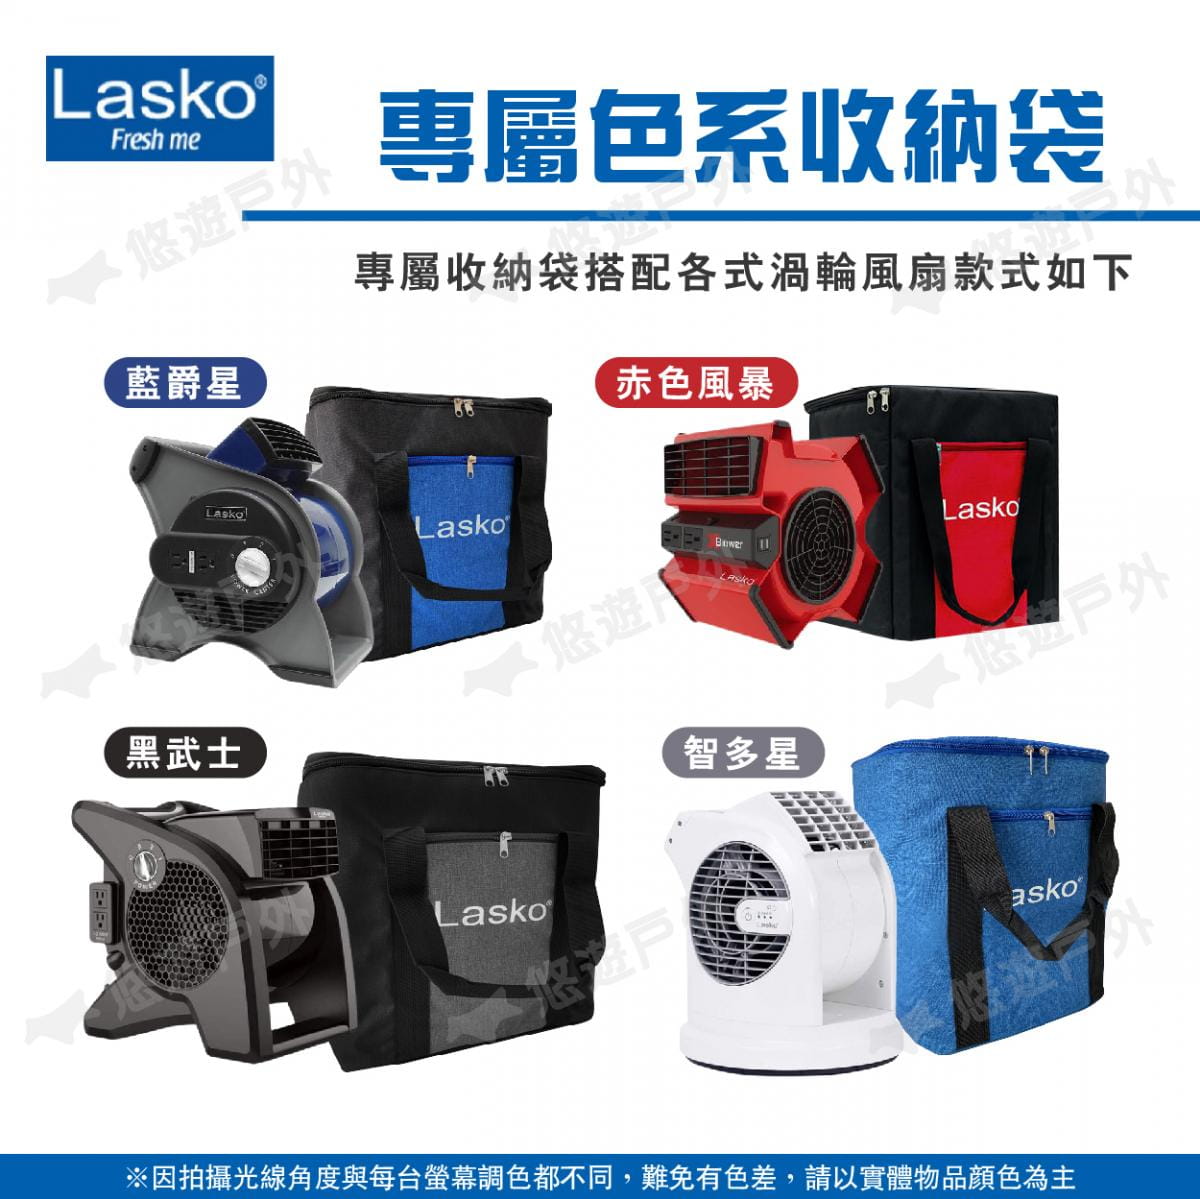 【Lasko】渦輪循環扇收納清潔組(收納袋+清潔刷) 悠遊戶外 2